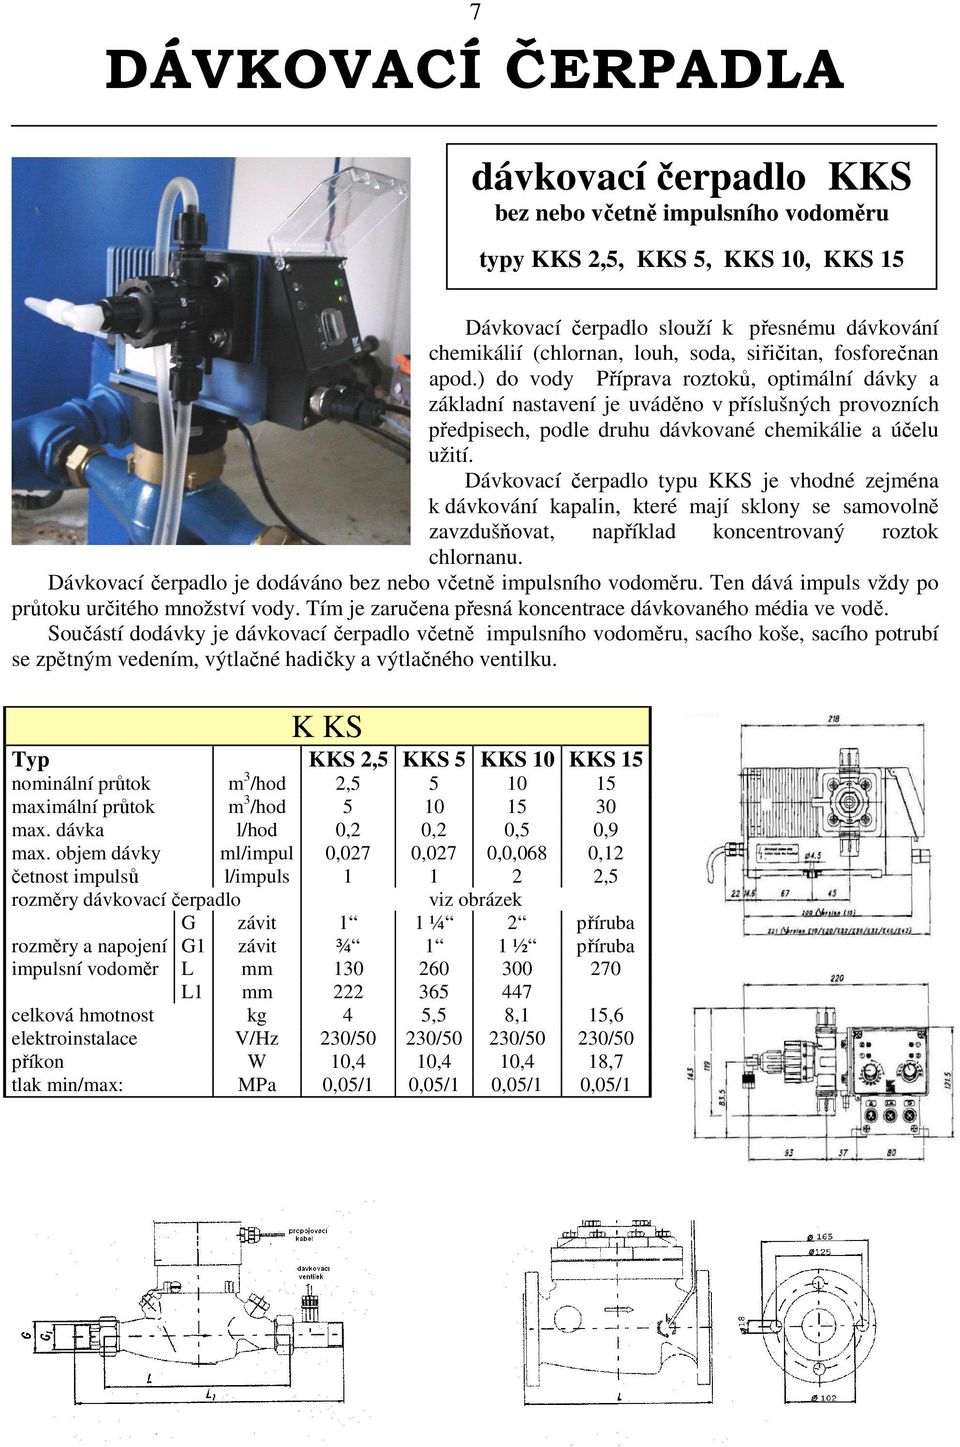 Dávkovací čerpadlo typu KKS je vhodné zejména k dávkování kapalin, které mají sklony se samovolně zavzdušňovat, například koncentrovaný roztok chlornanu.